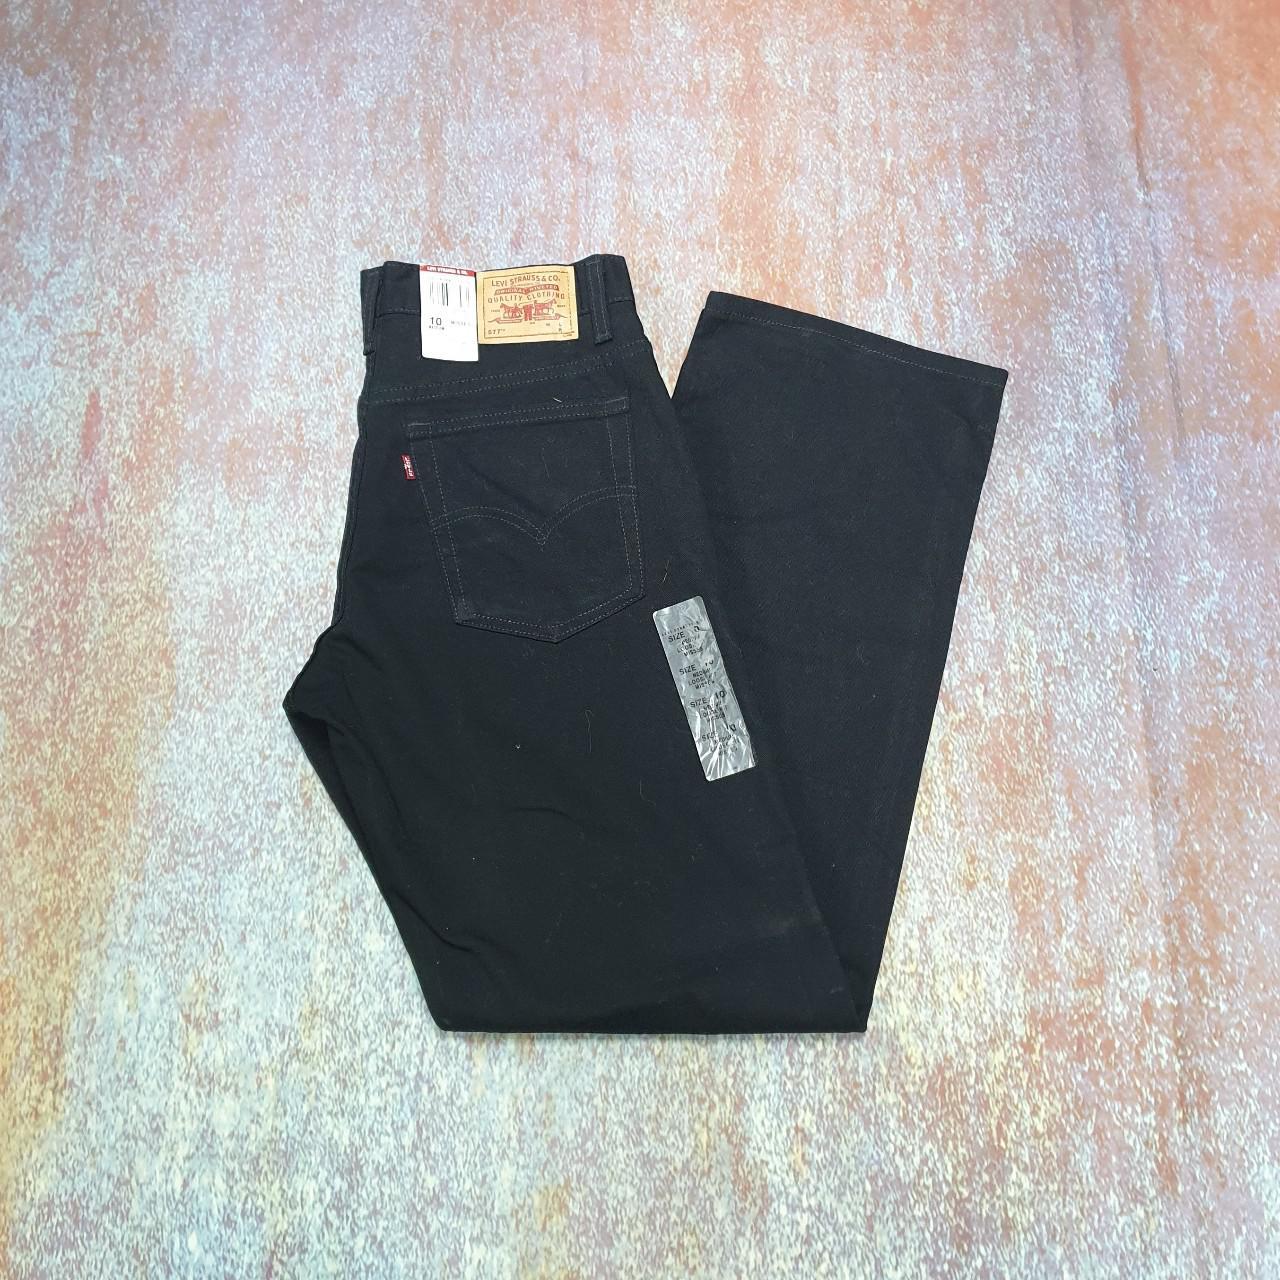 Vintage Levi's 577 jeans in Black made in... - Depop